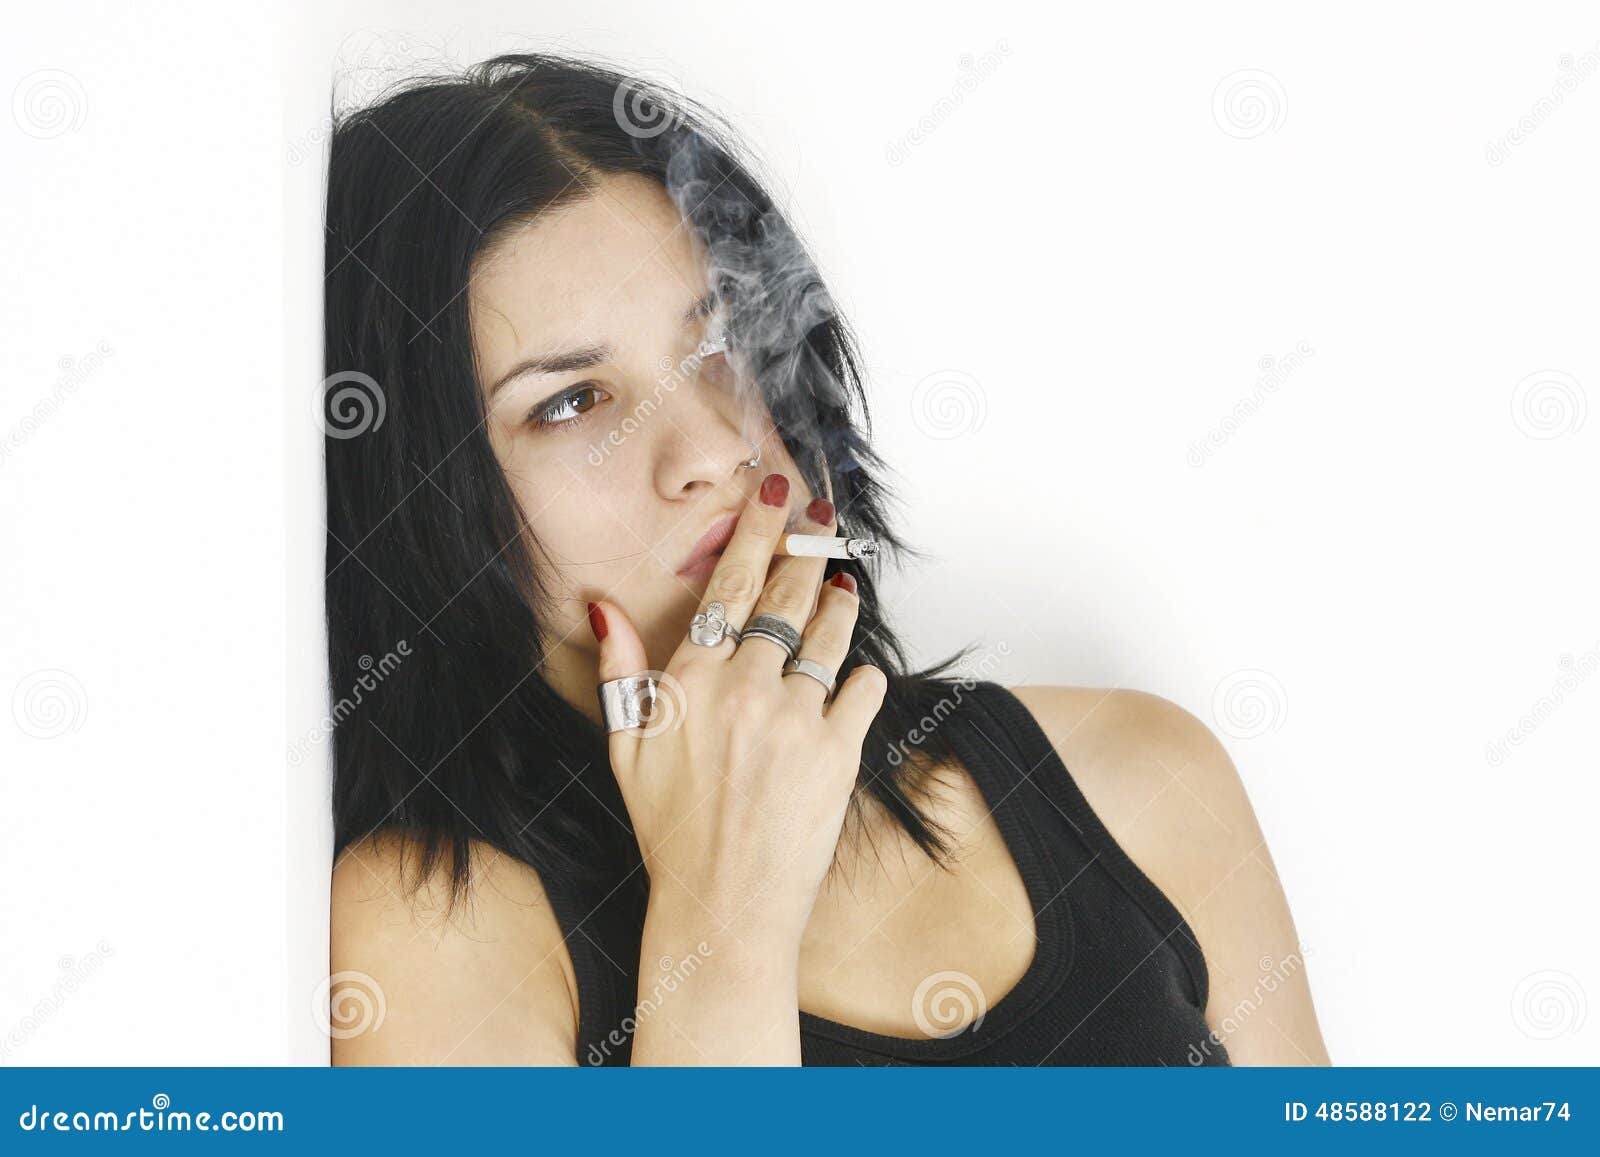 抽烟的妇女 库存图片. 图片 包括有 红头发人, 抽烟, 纵向, 女孩, 小鸡, 香烟, 烟雾, 围巾, 女性 - 12041291